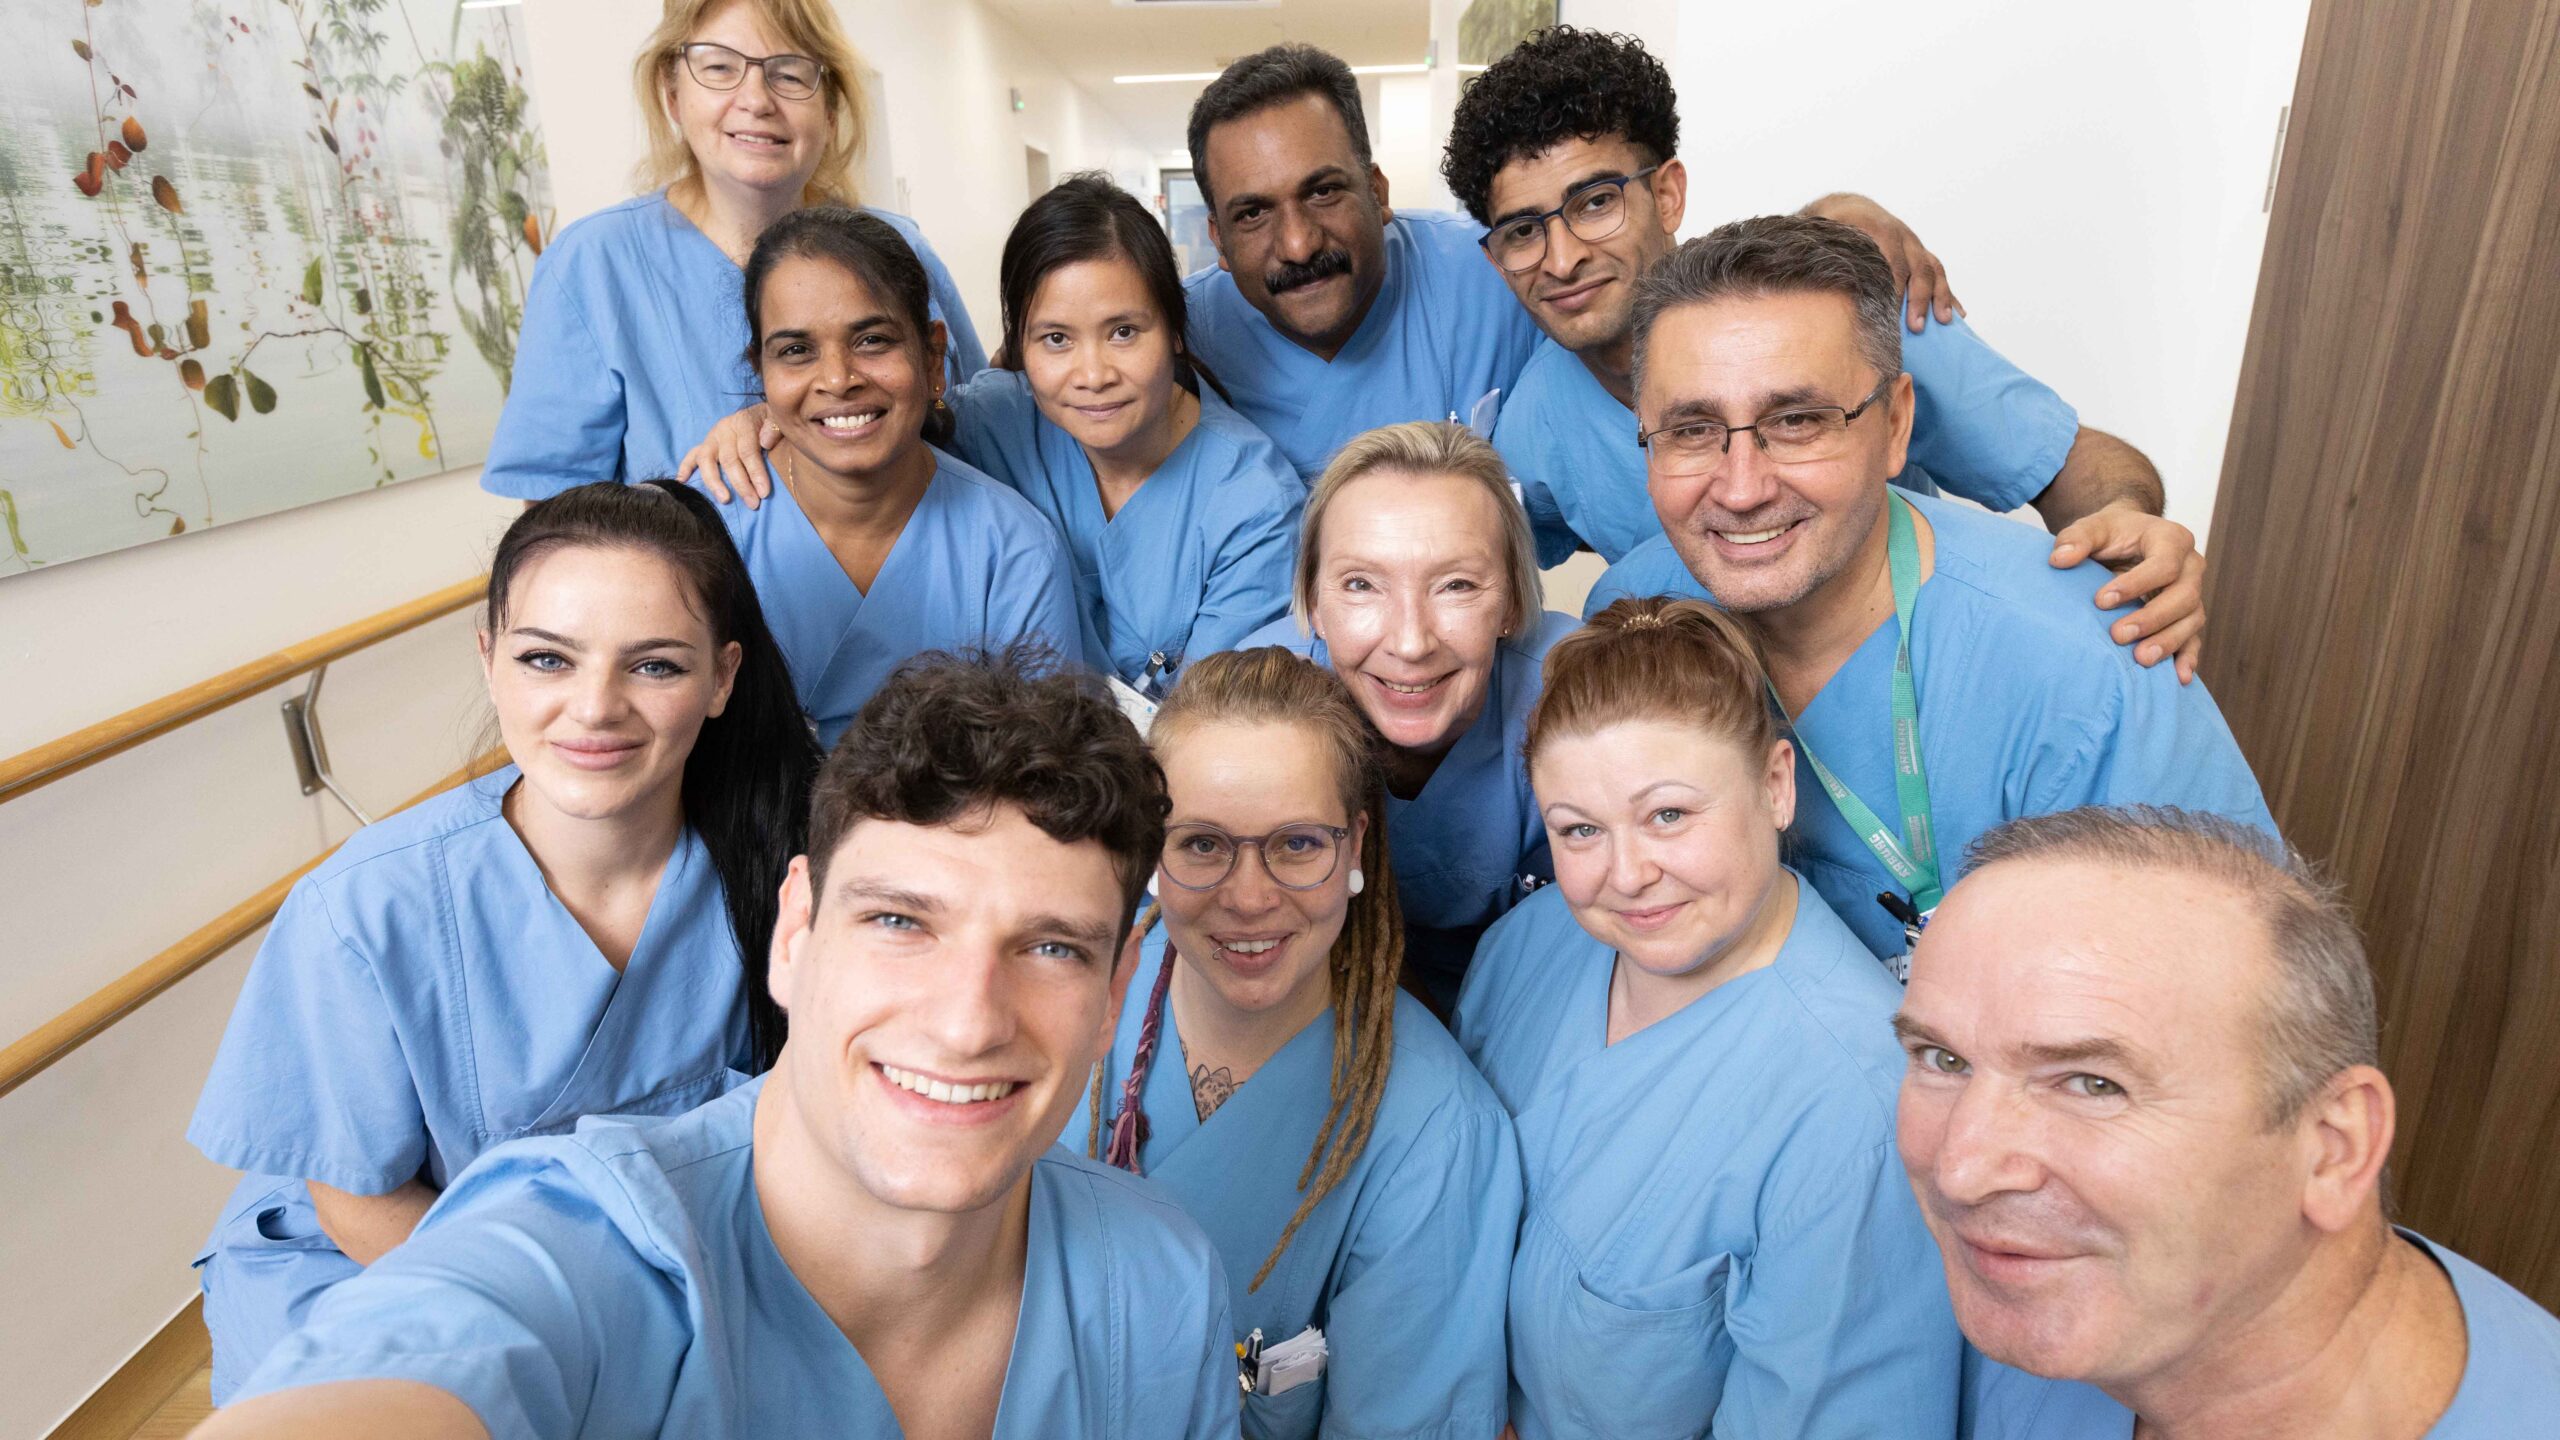 Ein Team vom zwölf Gesundheits- und Krankenpfleger*innen von einer Pfleges in blauer Arbeitskleidung. Sie stehen als Gruppe zusammmen und machen ein Selfie mit einem Smartphone